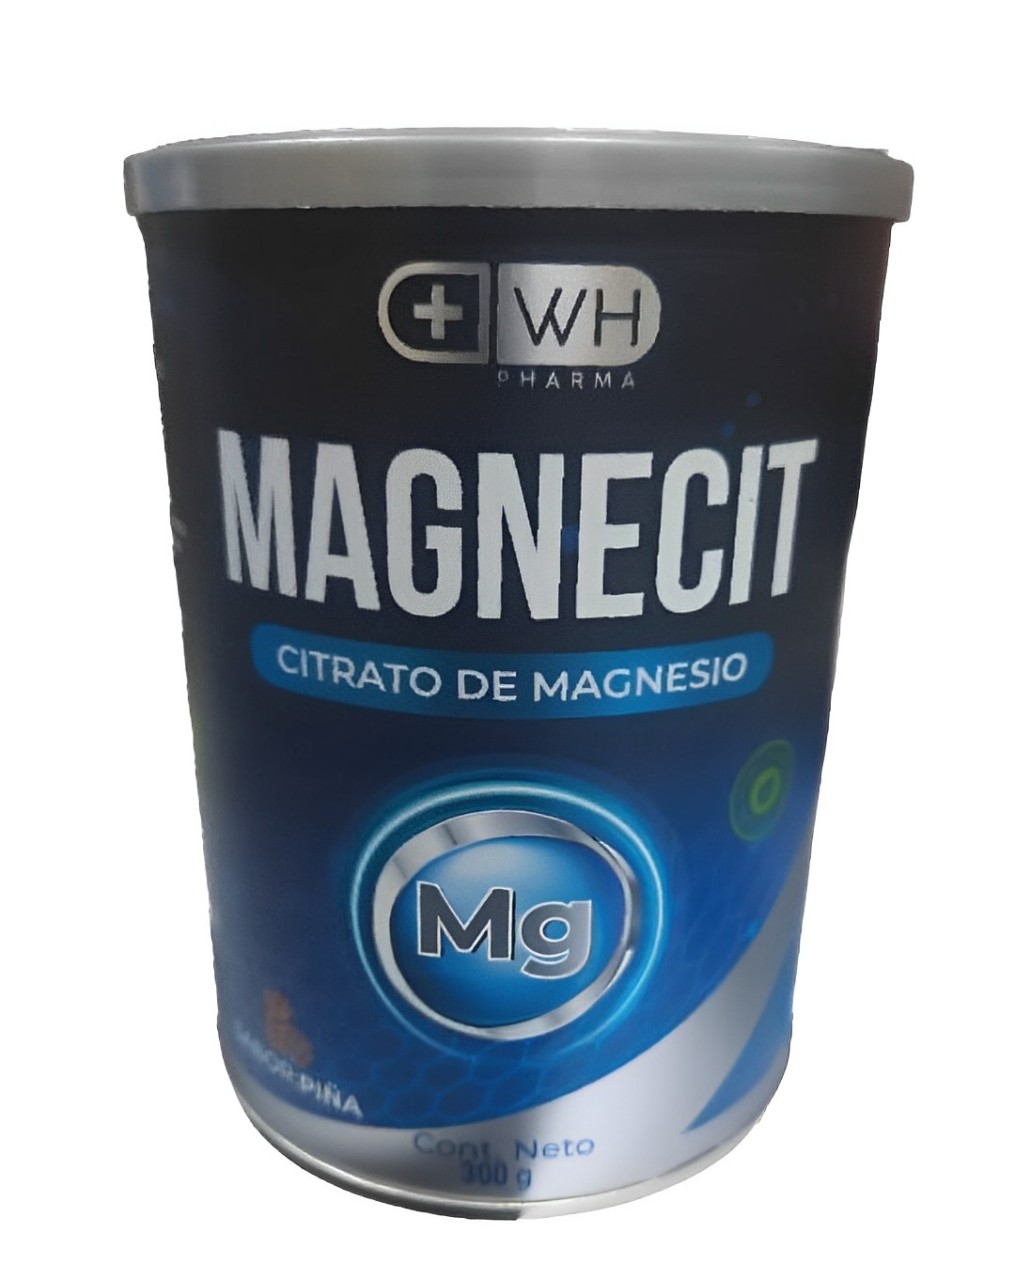 magnecit (1) (1) (1)